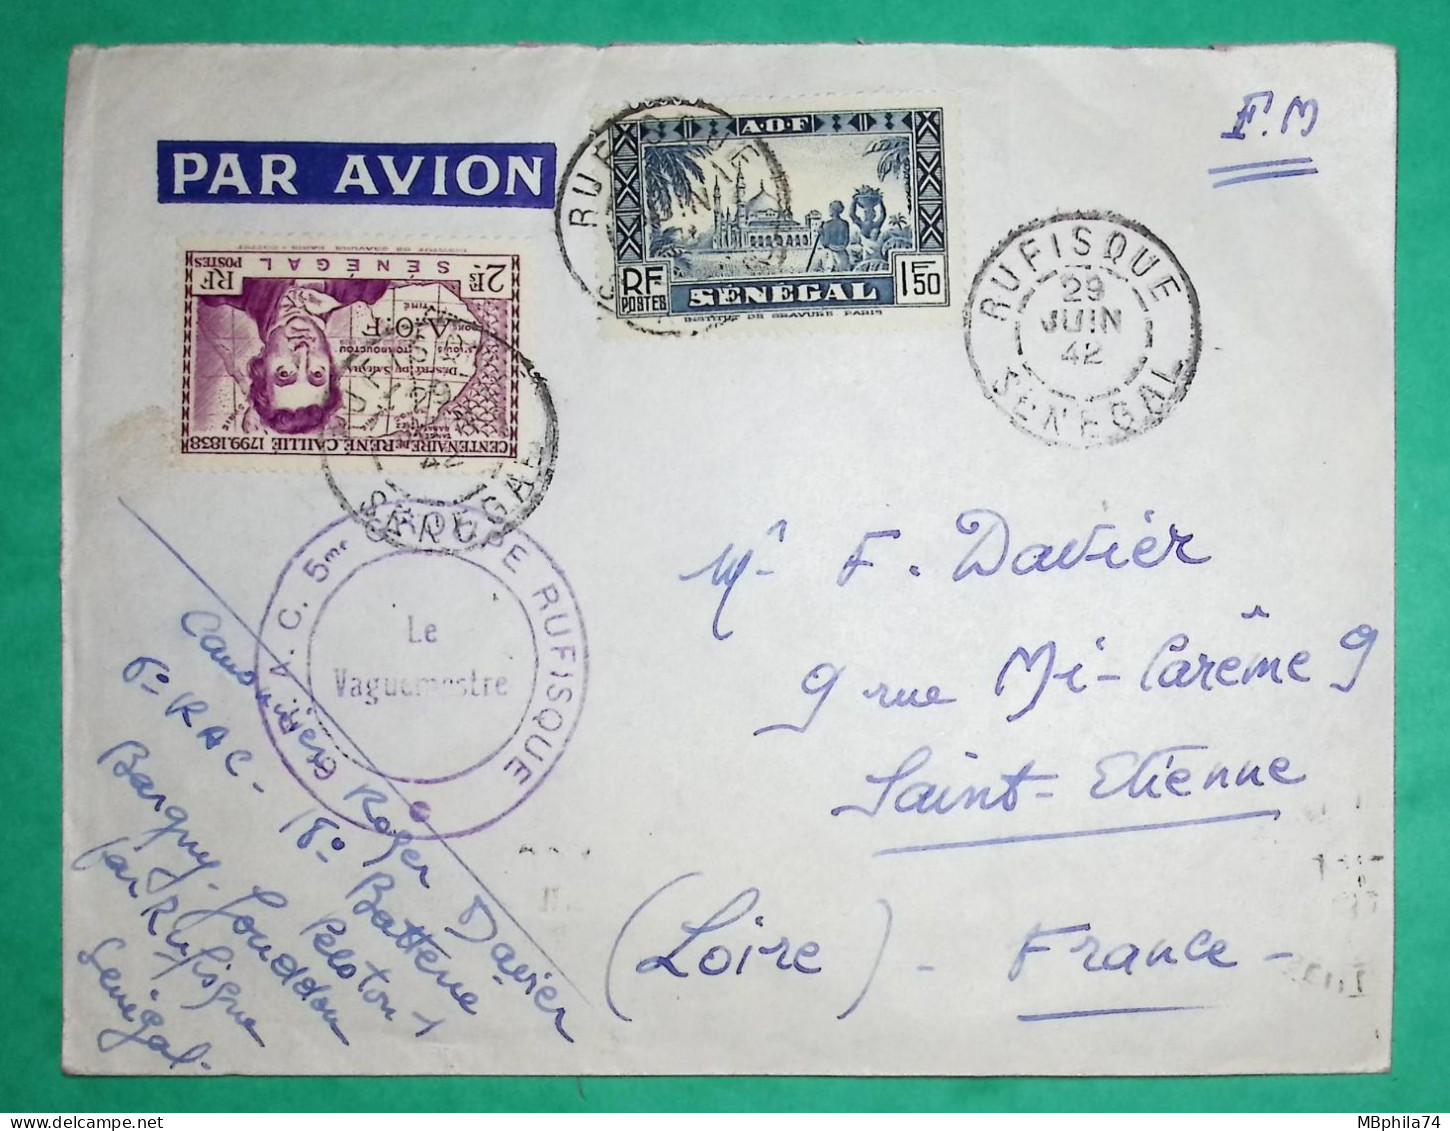 FRANCHISE MILITAIRE FM TAXE AVION RUFISQUE SENEGAL AOF POUR ST ETIENNE LOIRE 1942 WW2 LETTRE COVER FRANCE - Poste Aérienne